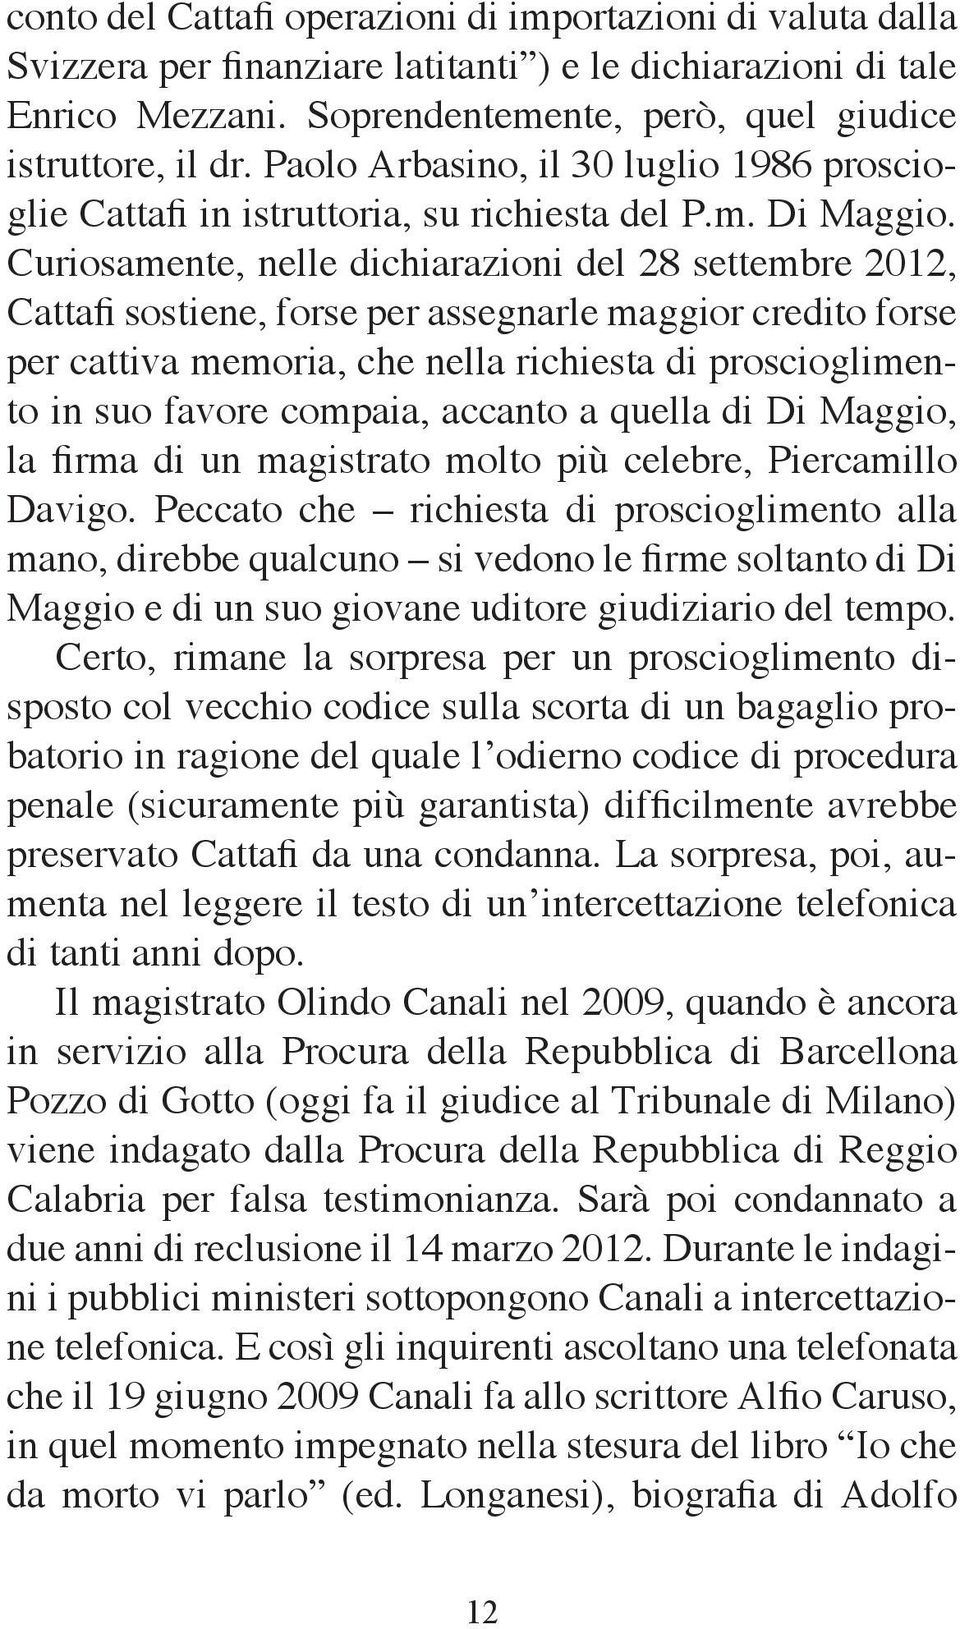 Curiosamente, nelle dichiarazioni del 28 settembre 2012, Cattafi sostiene, forse per assegnarle maggior credito forse per cattiva memoria, che nella richiesta di proscioglimento in suo favore